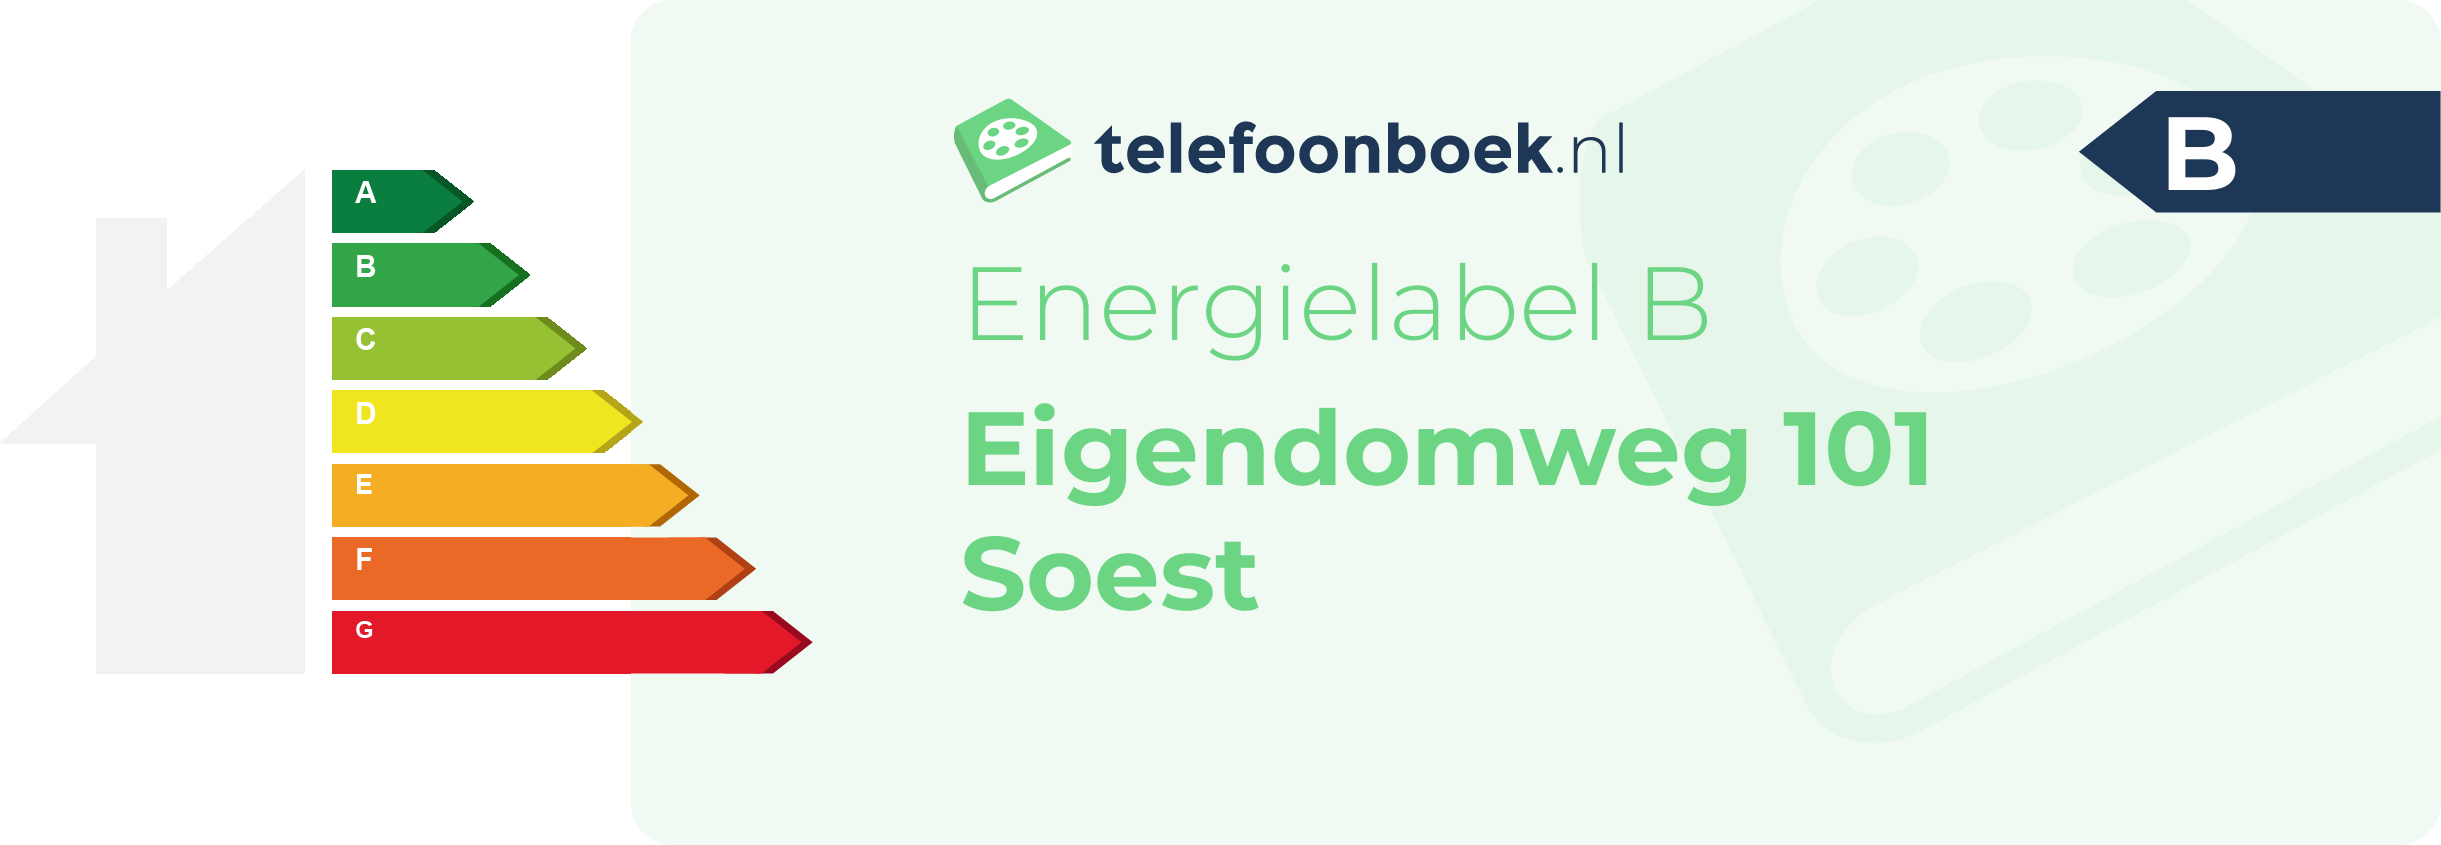 Energielabel Eigendomweg 101 Soest